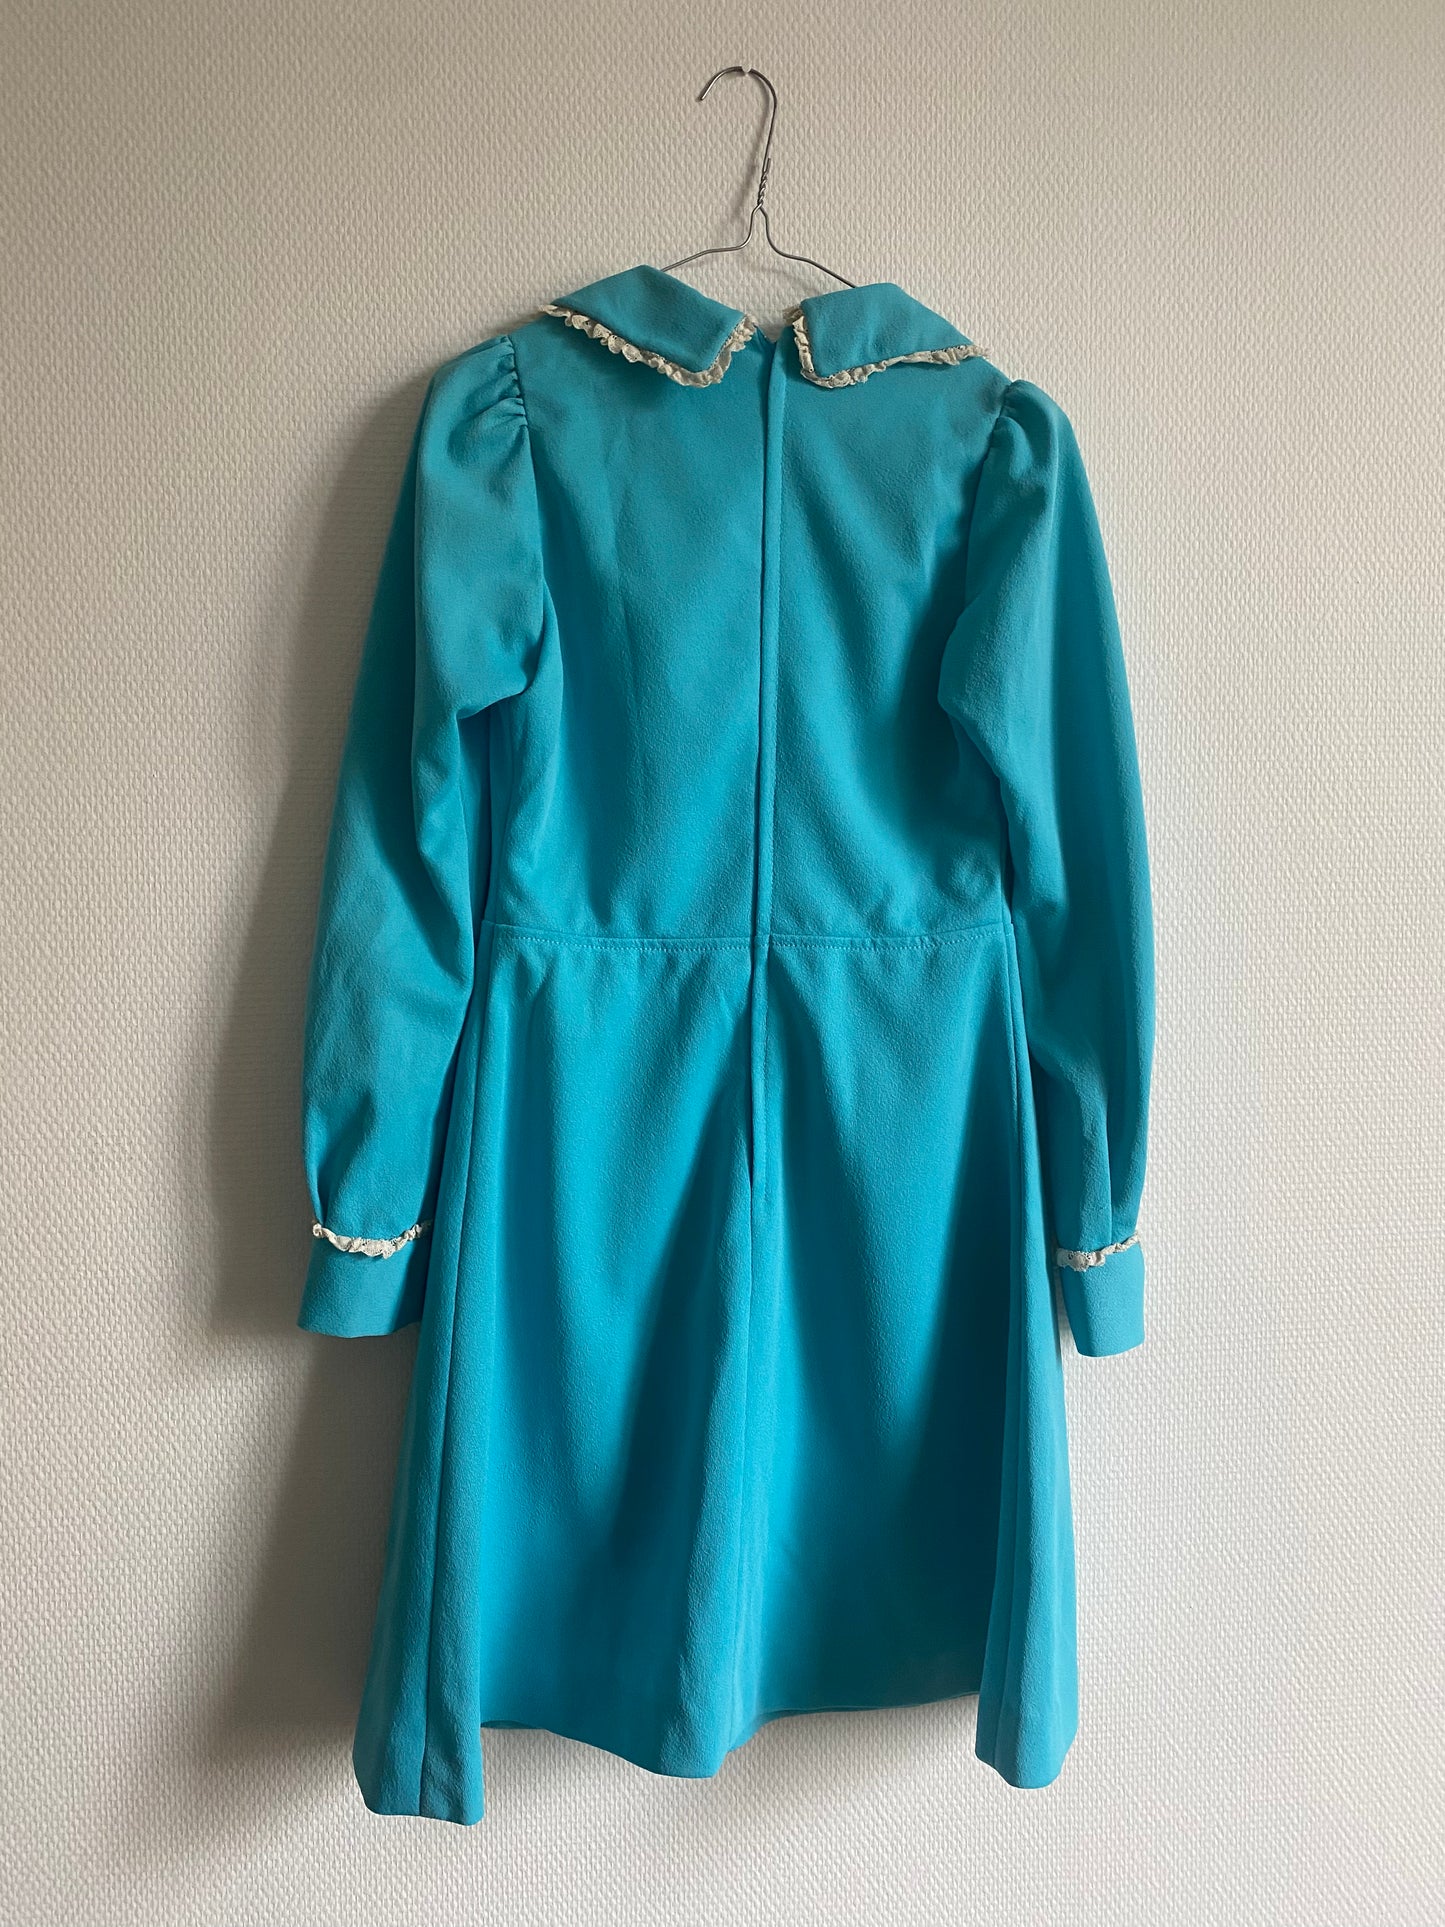 Robe bleu 70s